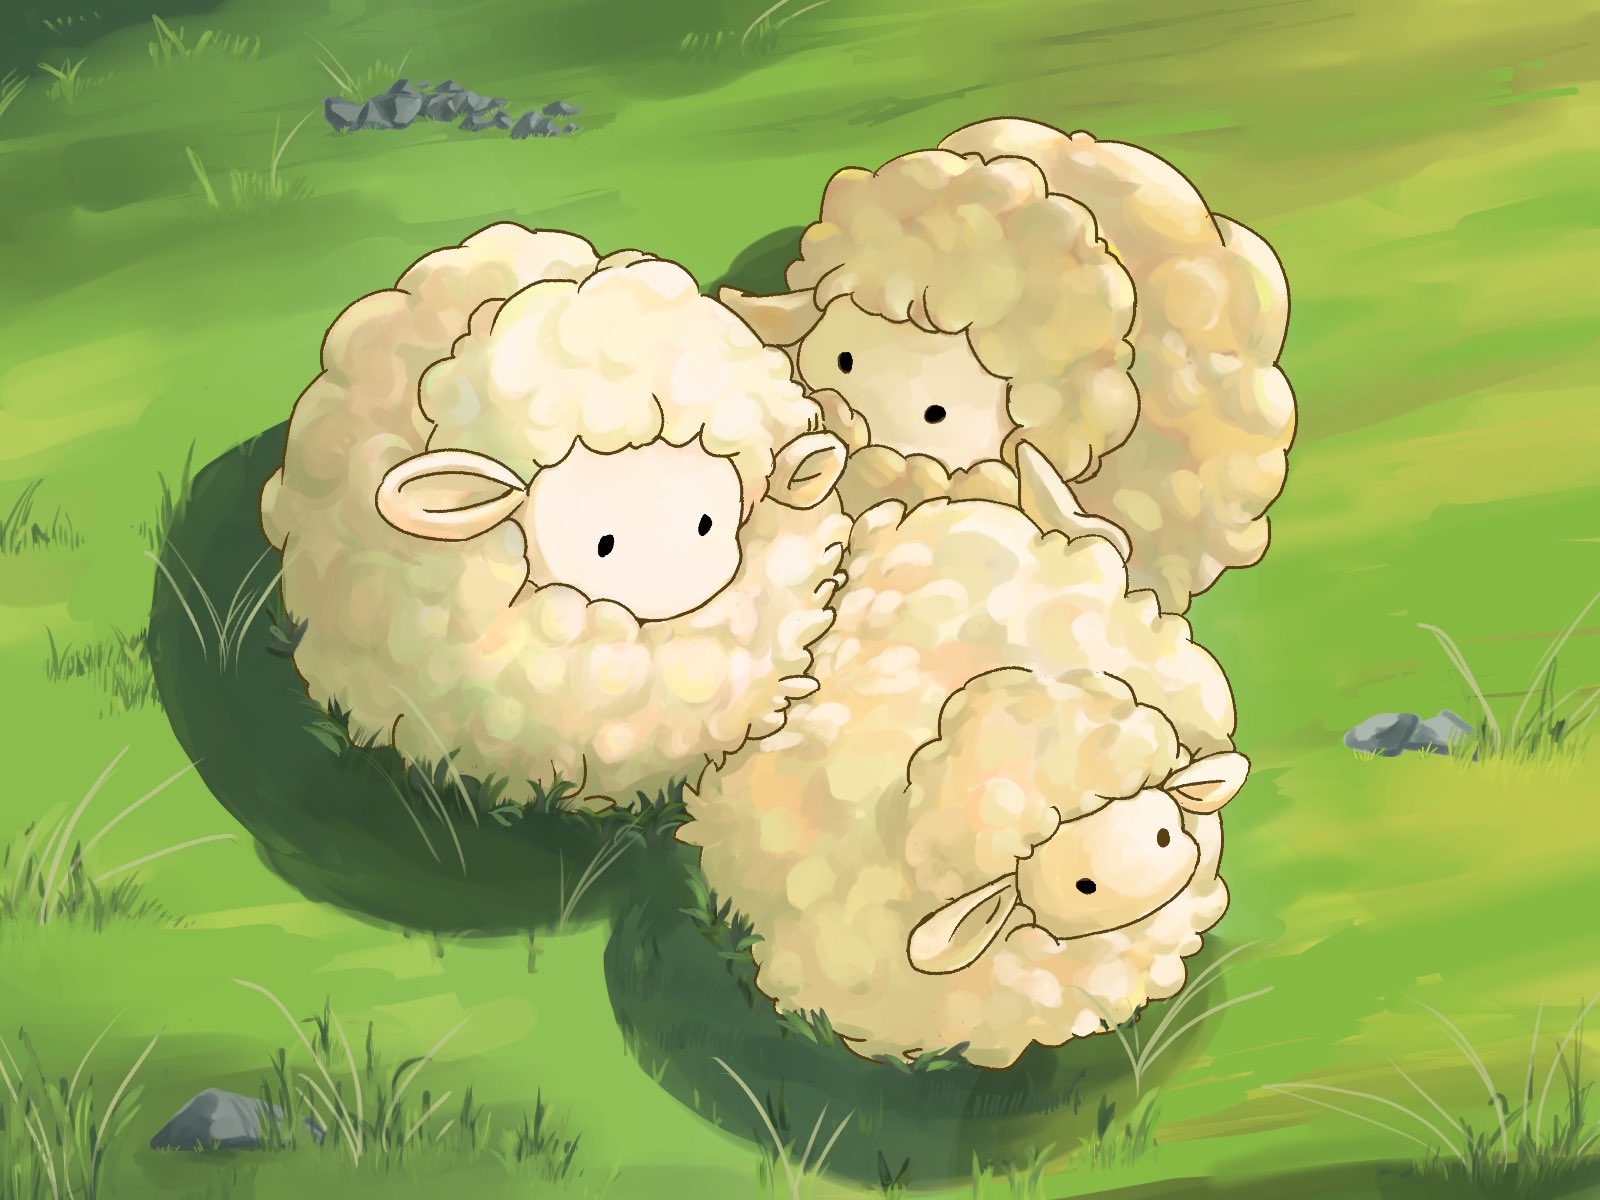 日野ま Hinoma Auf Twitter Kooooona この羊さんめっちゃ可愛いですね 思わずイラストを描くくらい気に入ってしまいました 私もニュージーランドに行くことがあったら お土産に買っていきます T Co 0ruxs3qyo0 Twitter